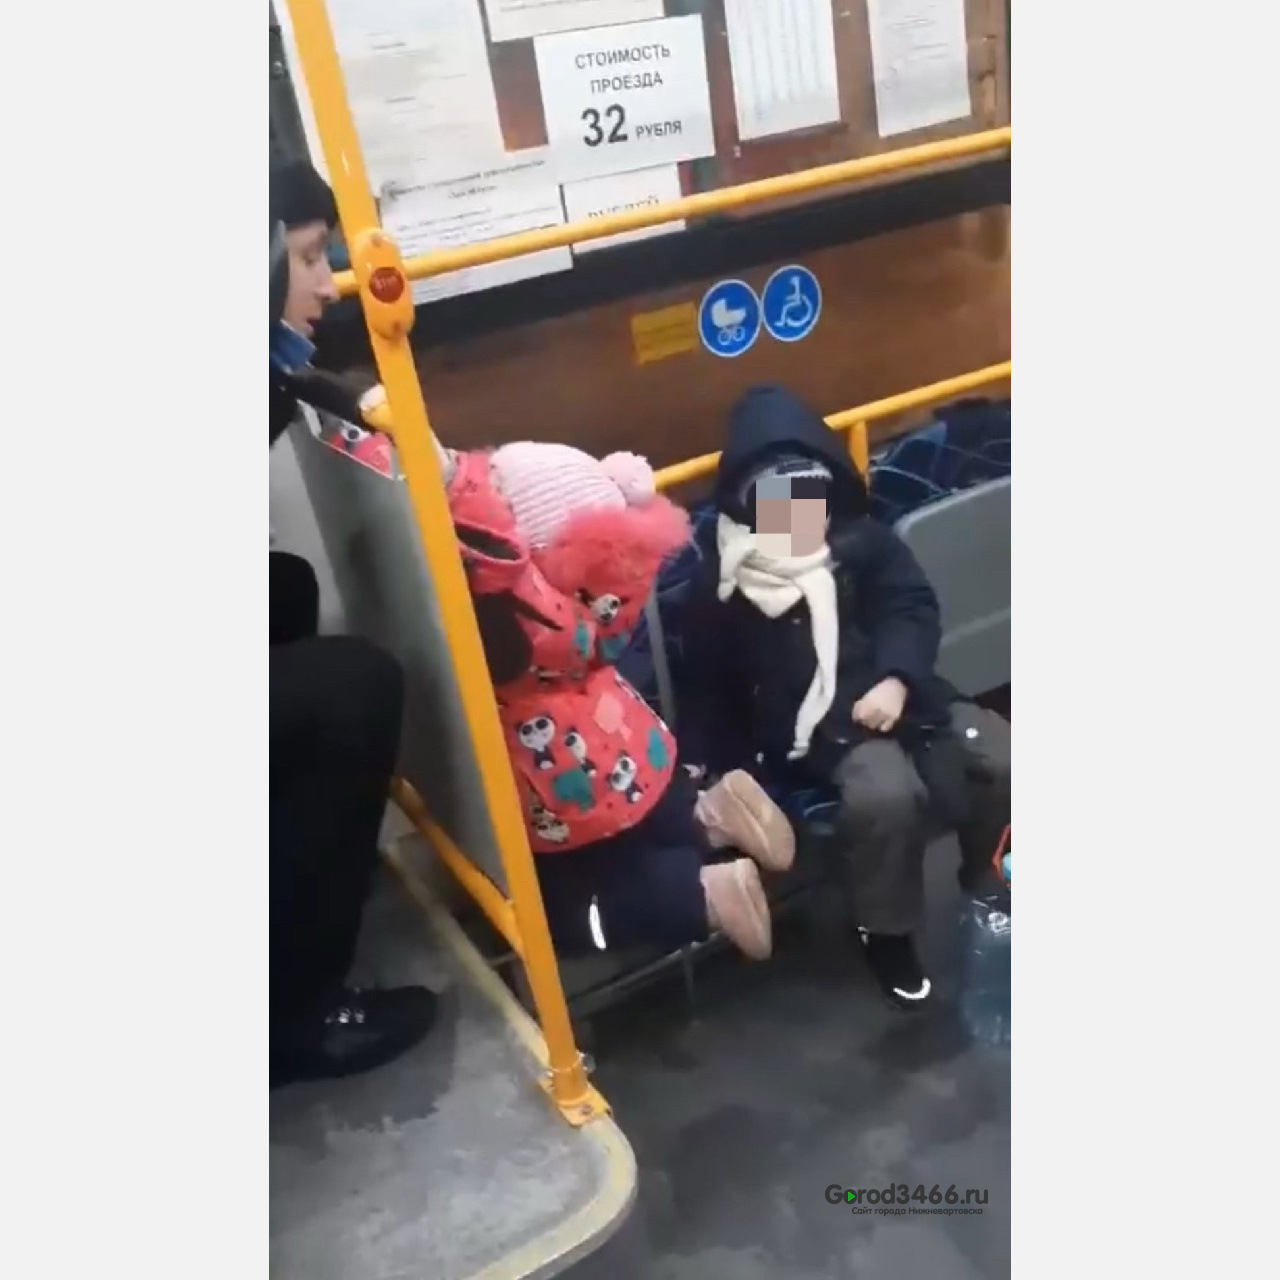 Жители Сургута пожаловались на мужчину, который душил ребенка в автобусе